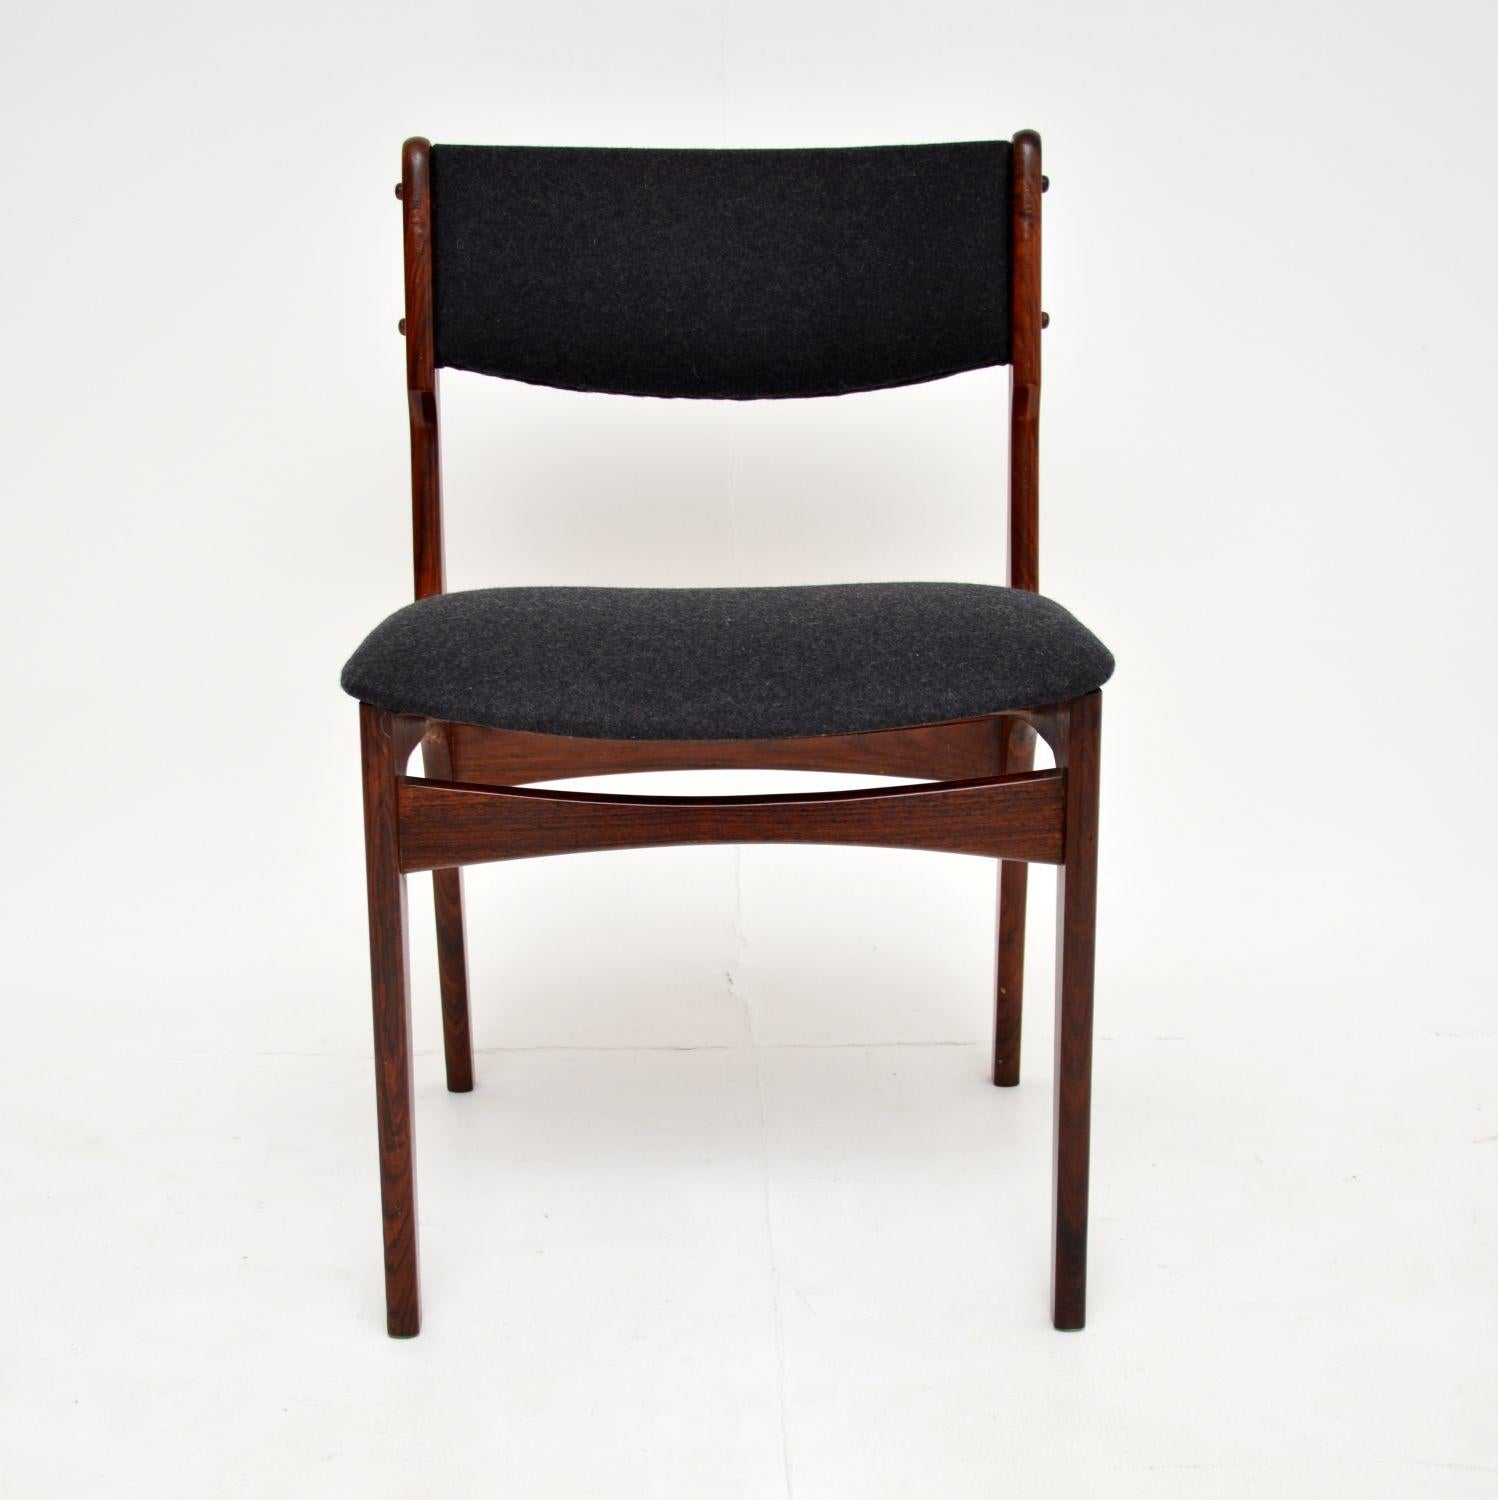 Ein stilvoller und sehr gut gemachter dänischer Stuhl in. Dieser wurde von Erik Buch entworfen und in den 1960er Jahren in Dänemark hergestellt.

Die Qualität ist hervorragend, es ist sehr gut gebaut, bequem und stützend. Er eignet sich perfekt als